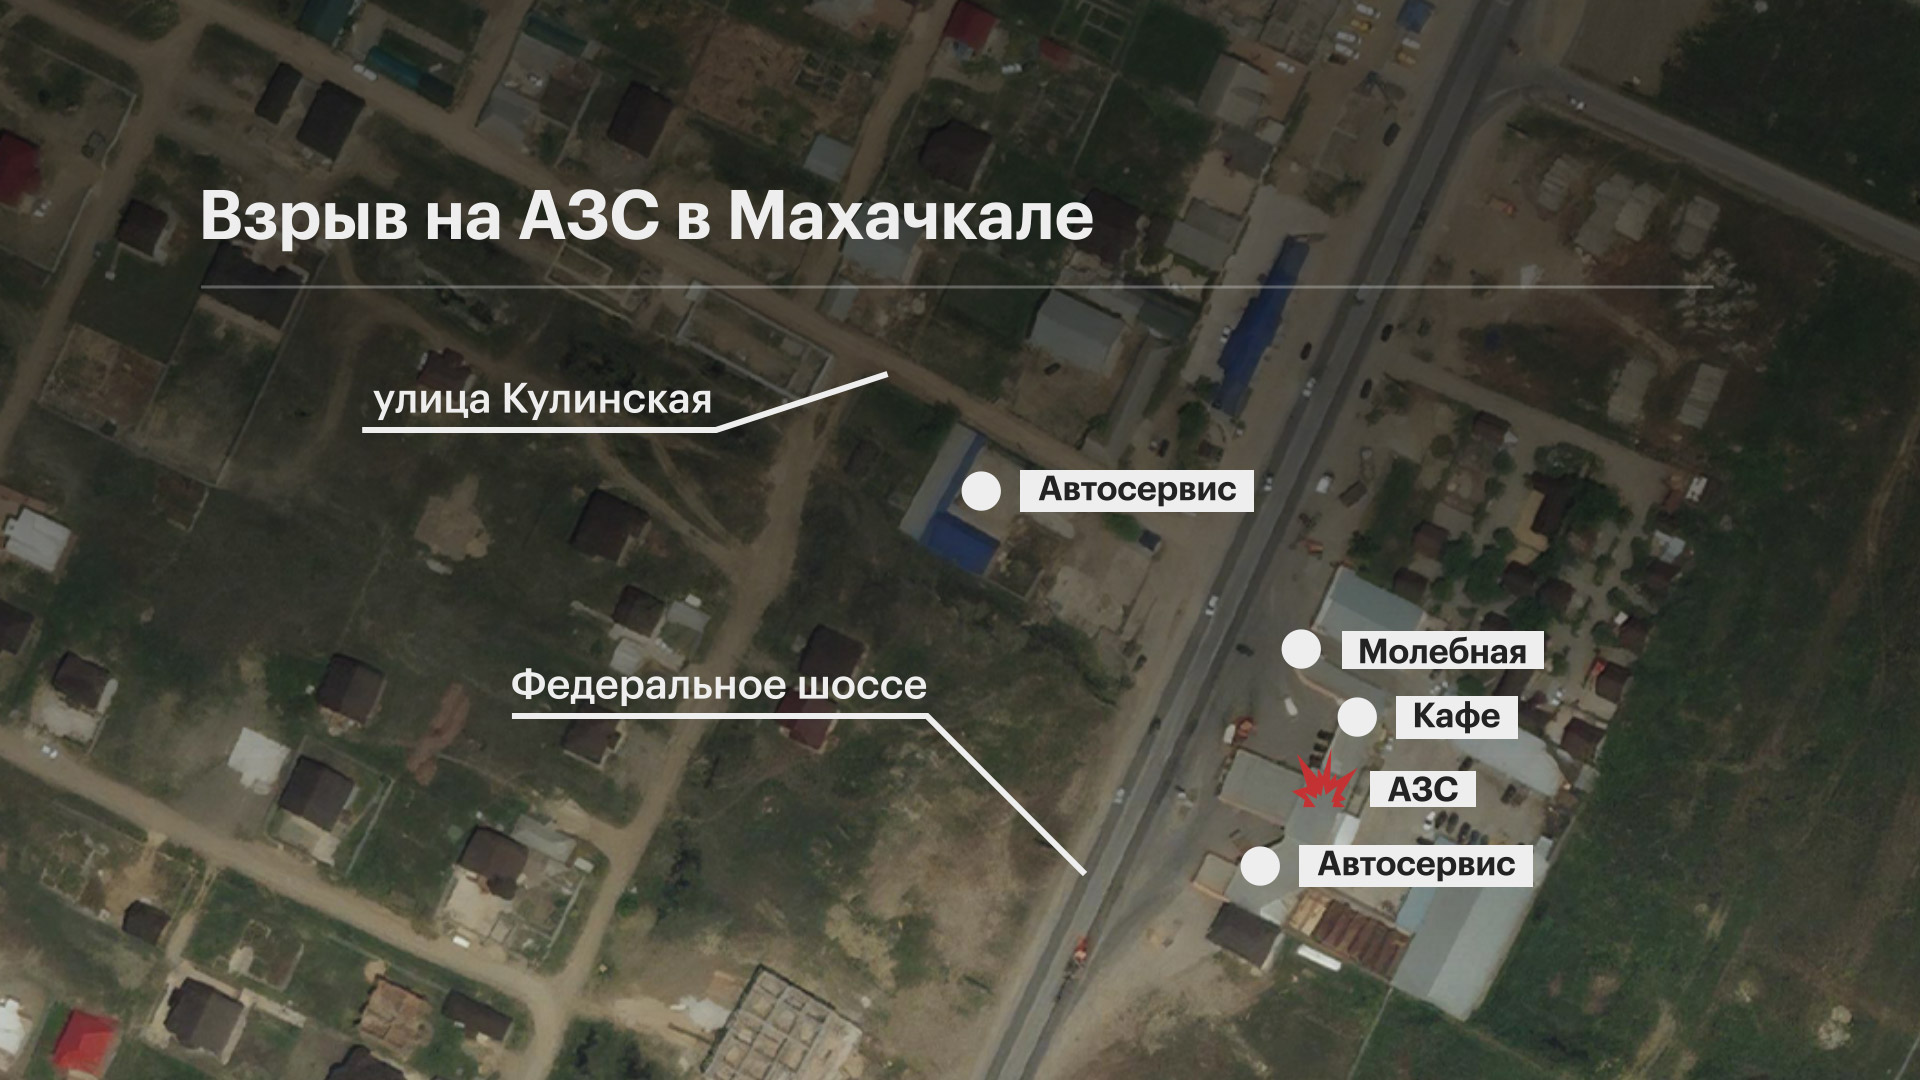 Спецборт МЧС доставит из Махачкалы в Москву 17 пострадавших после взрыва